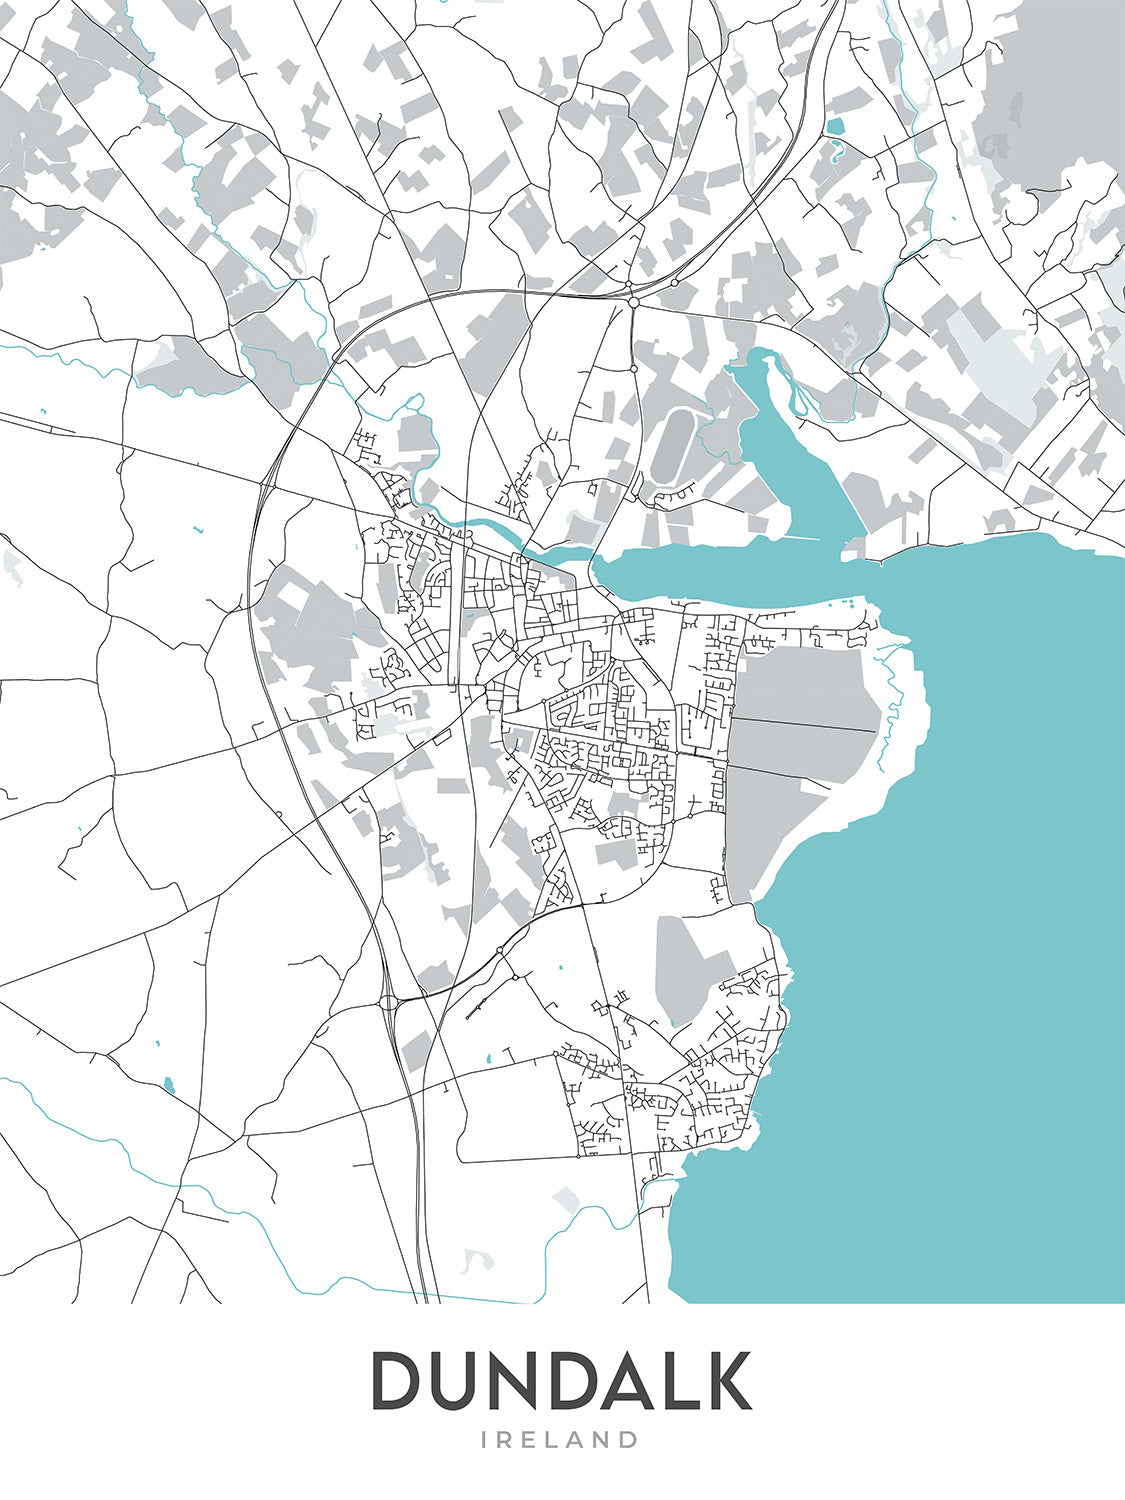 Mapa moderno de la ciudad de Dundalk, Irlanda: Estadio de Dundalk, Catedral de San Patricio, N1, N52, R173